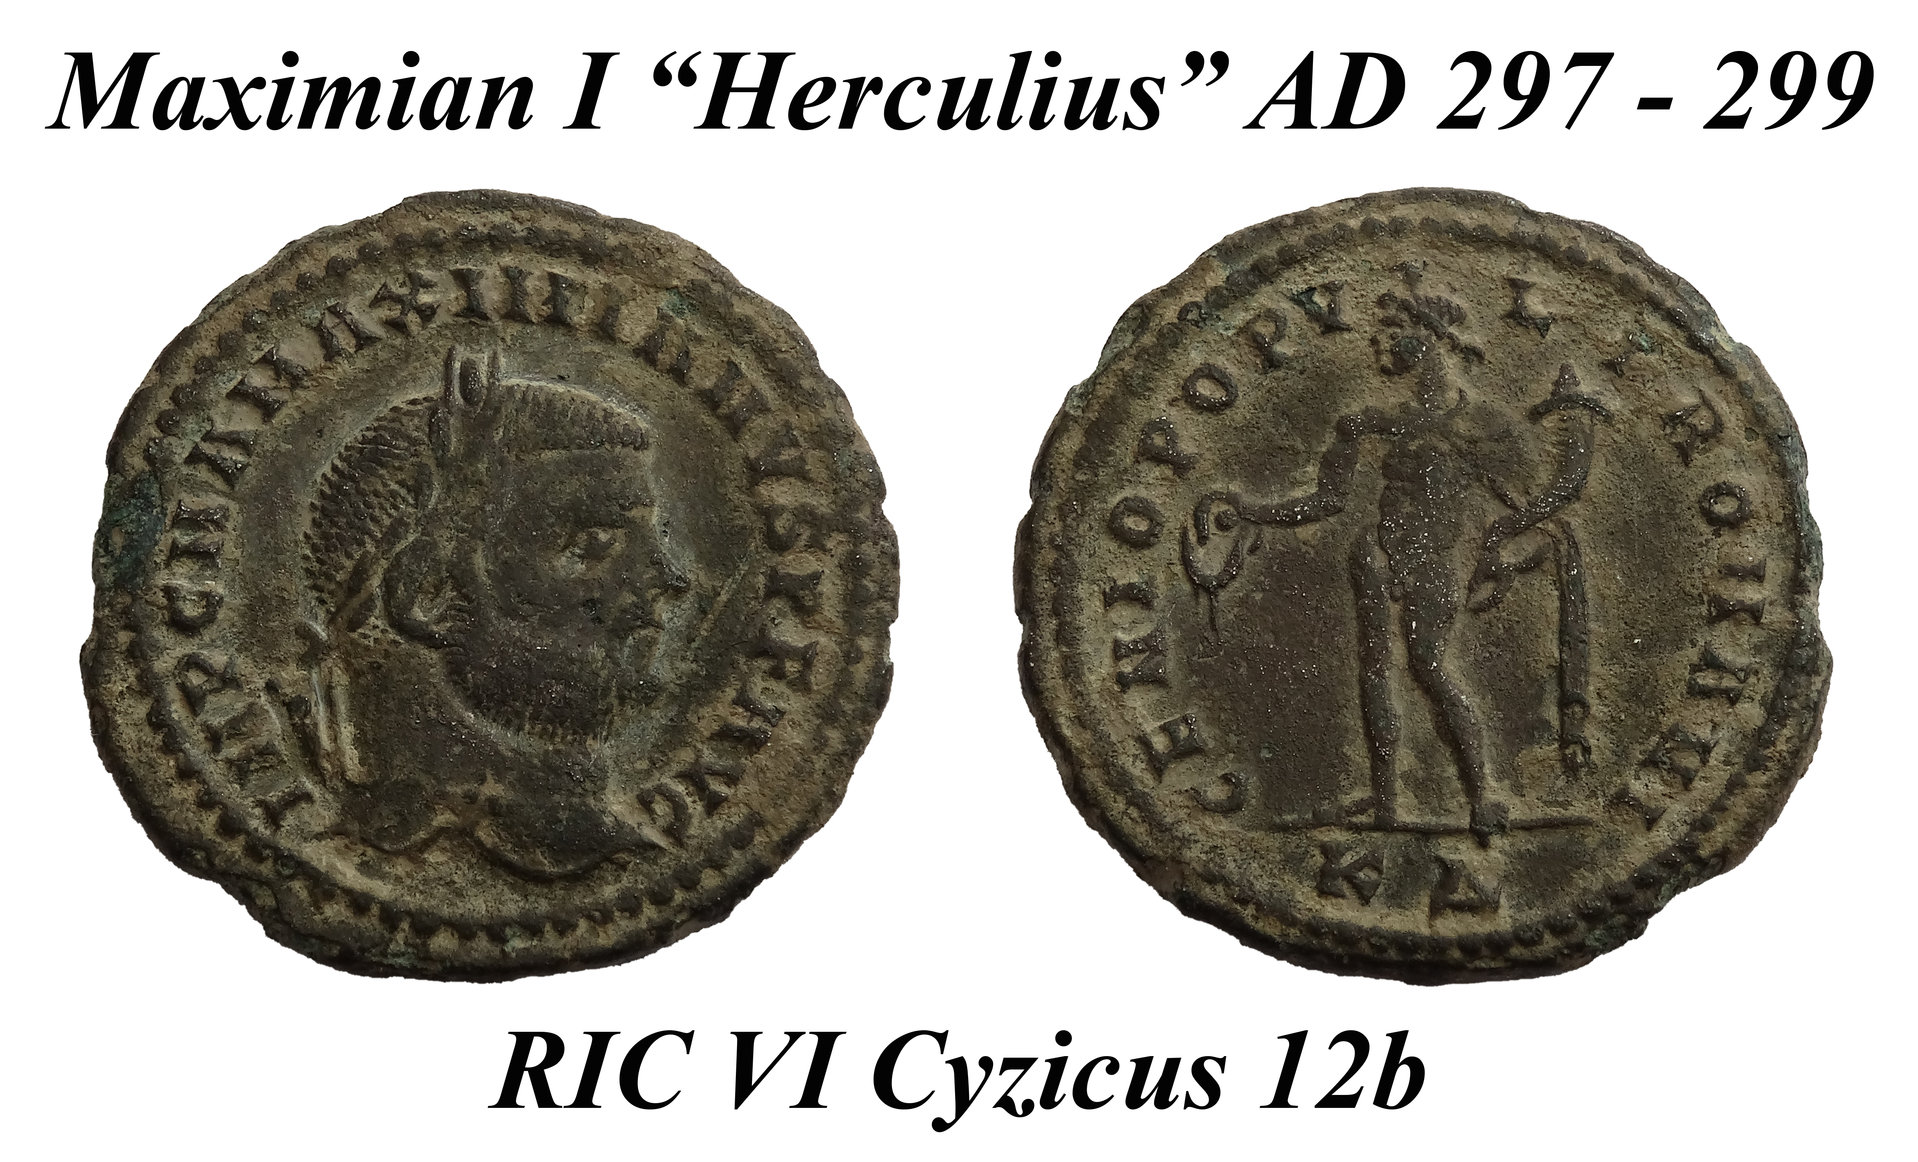 90b Maximian I Herculius Cyzicus 12b.jpg